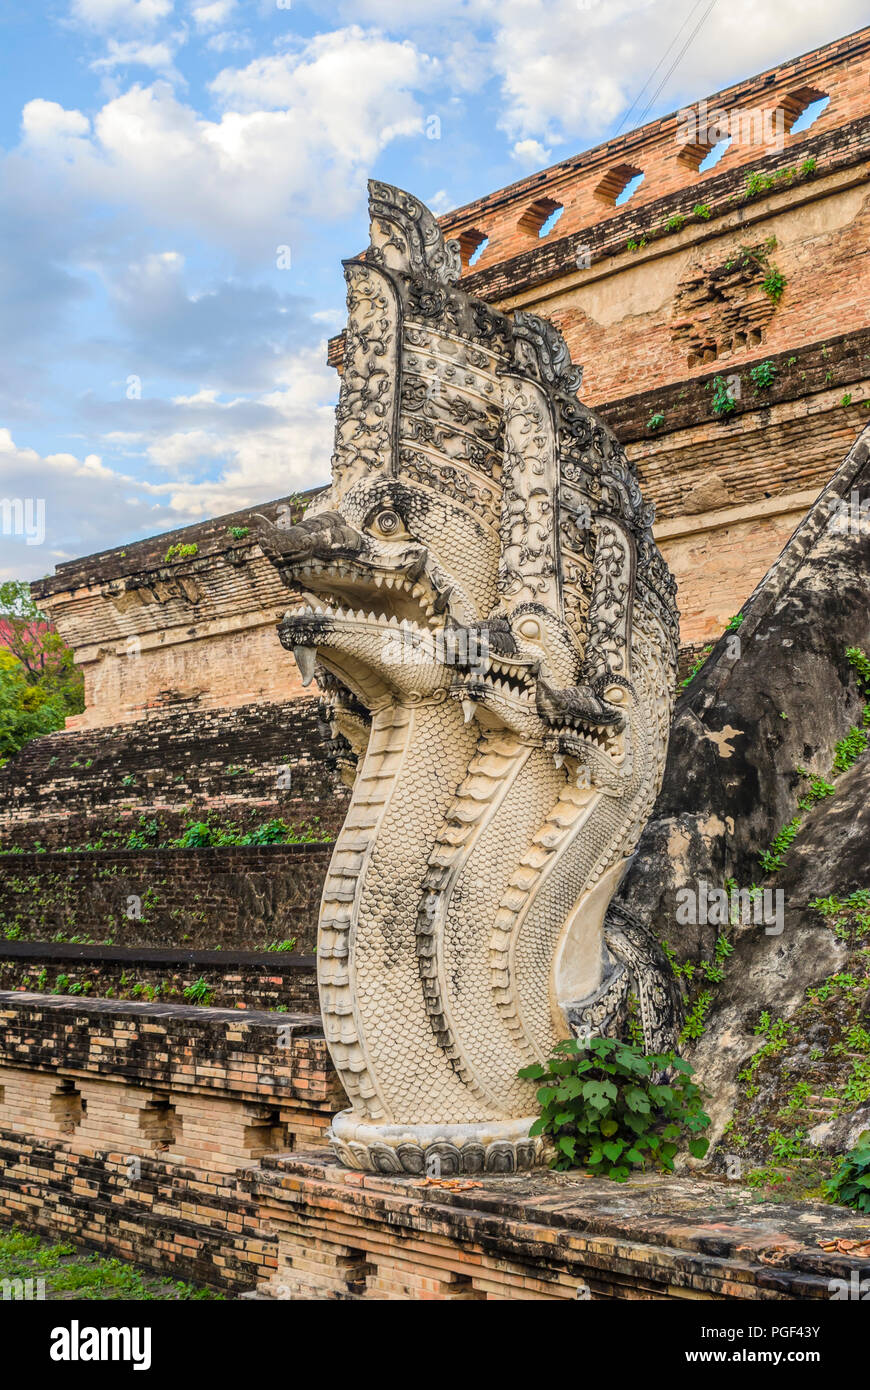 Detail of a Buddhist Naga Snake at Wat Chedi Luang, Chiang Mai, Thailand Stock Photo